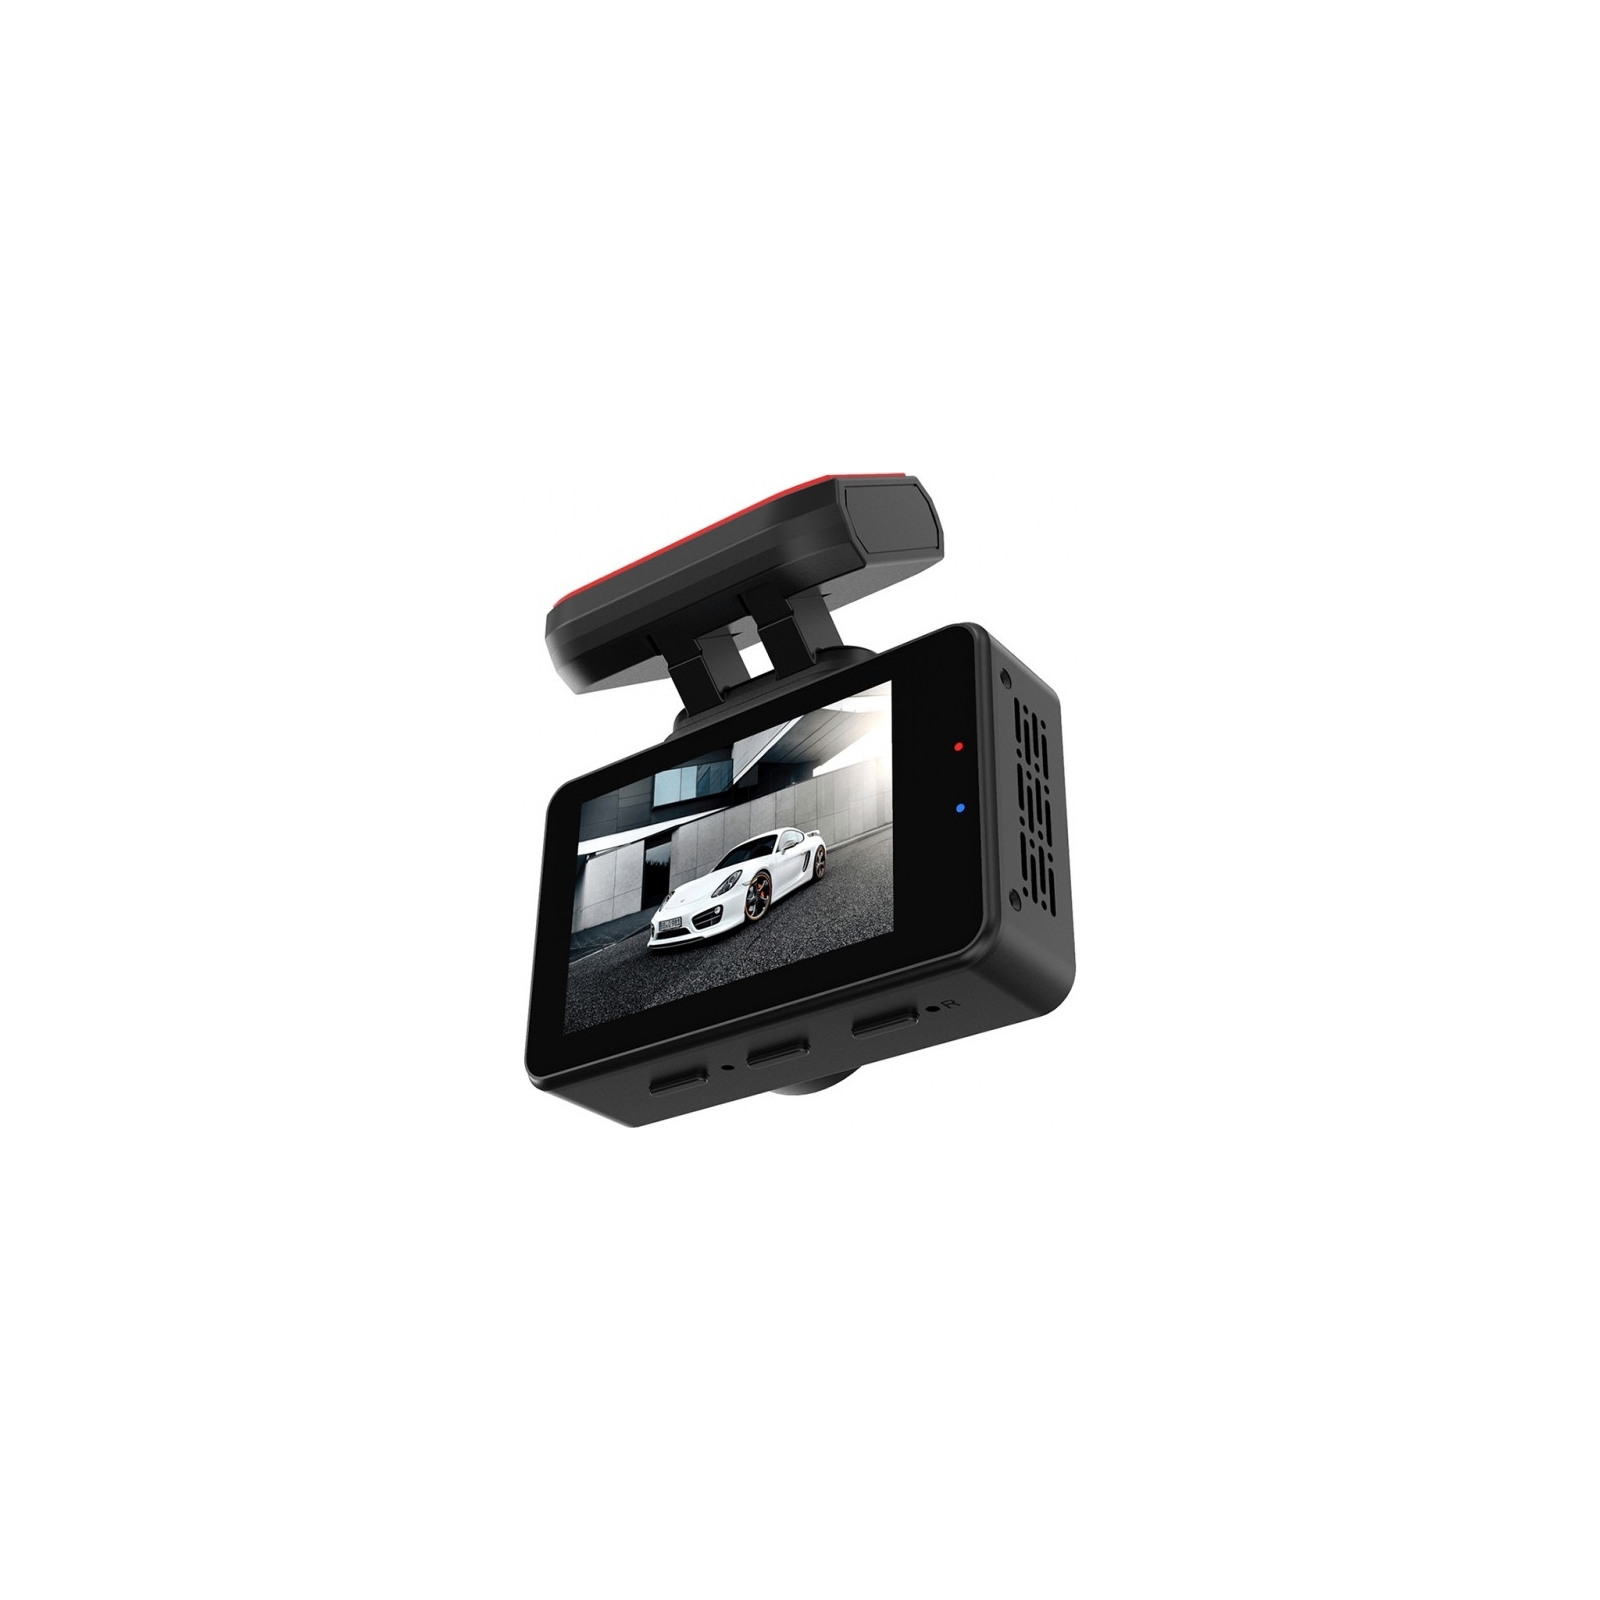 Видеорегистратор Aspiring AT300 Speedcam, GPS, Magnet (Aspiring AT300 Speedcam, GPS, Magnet) изображение 7